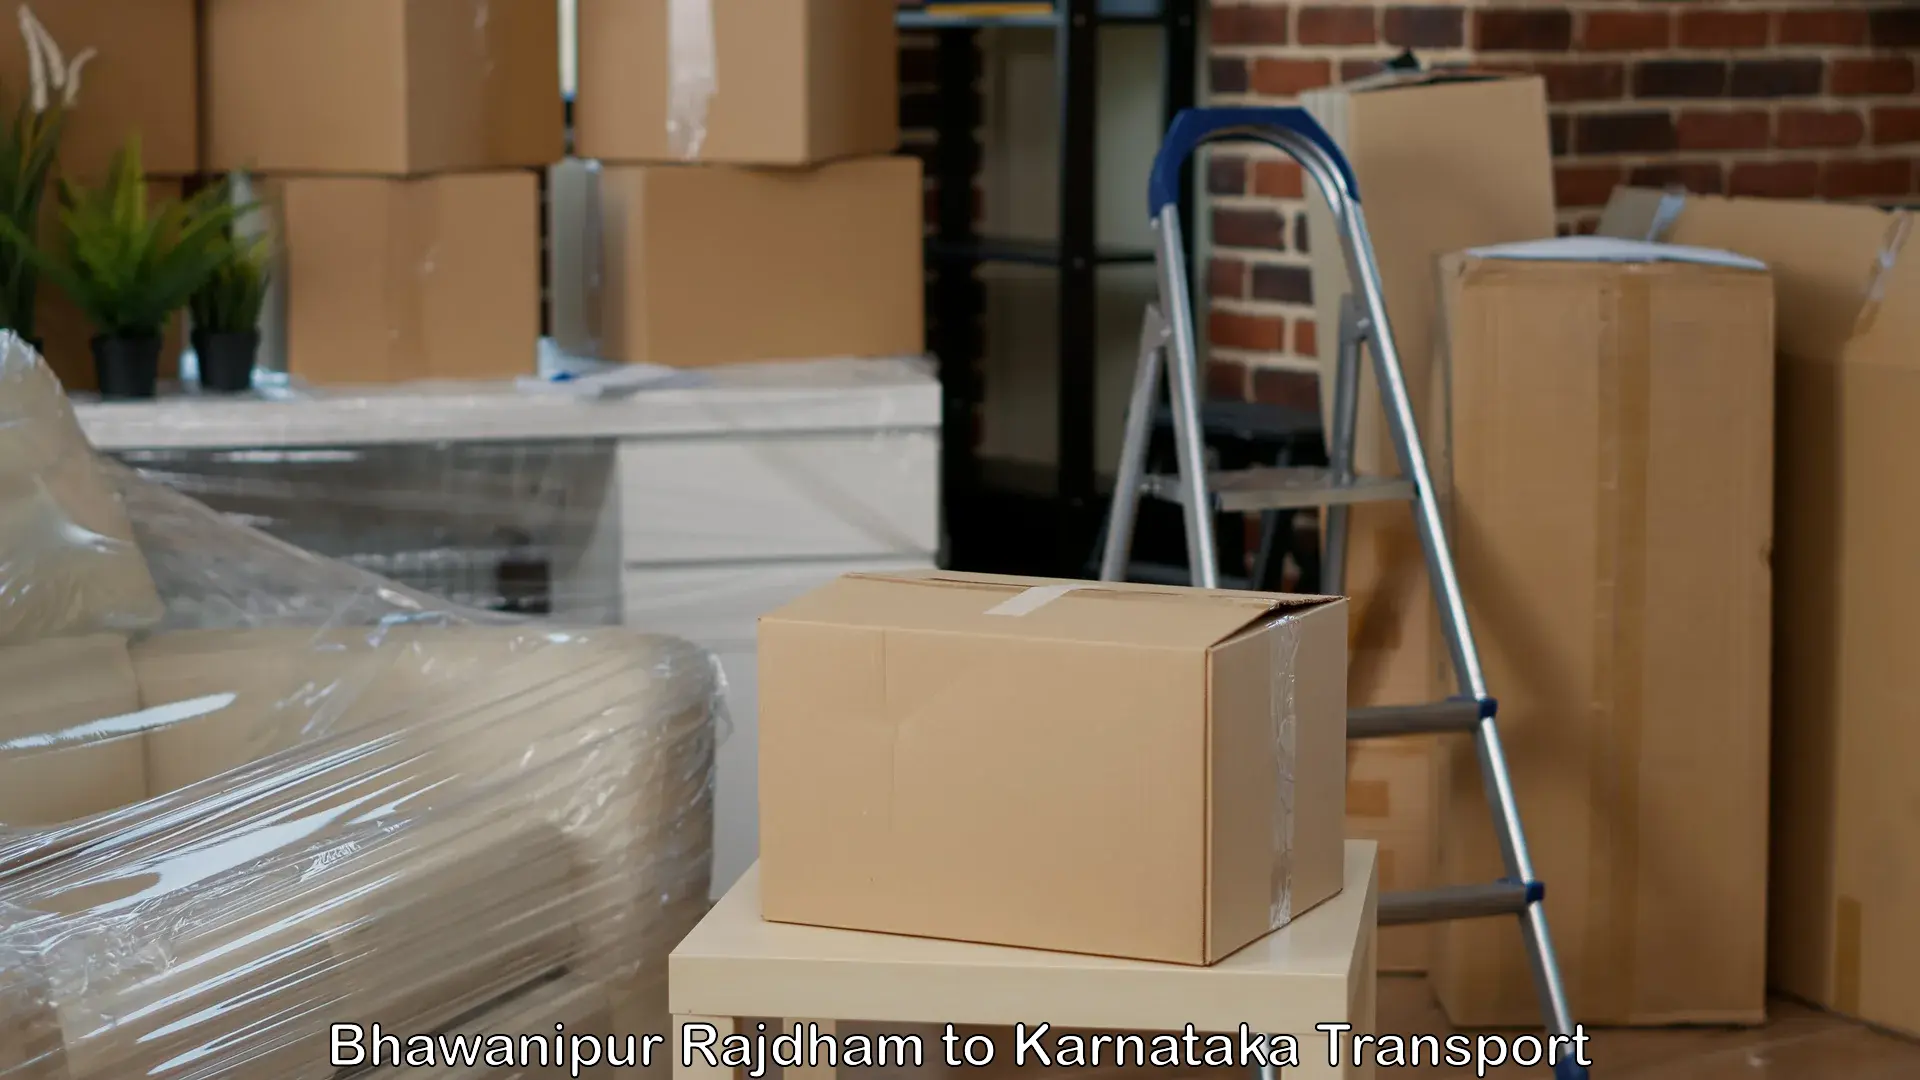 Goods delivery service Bhawanipur Rajdham to Karnataka